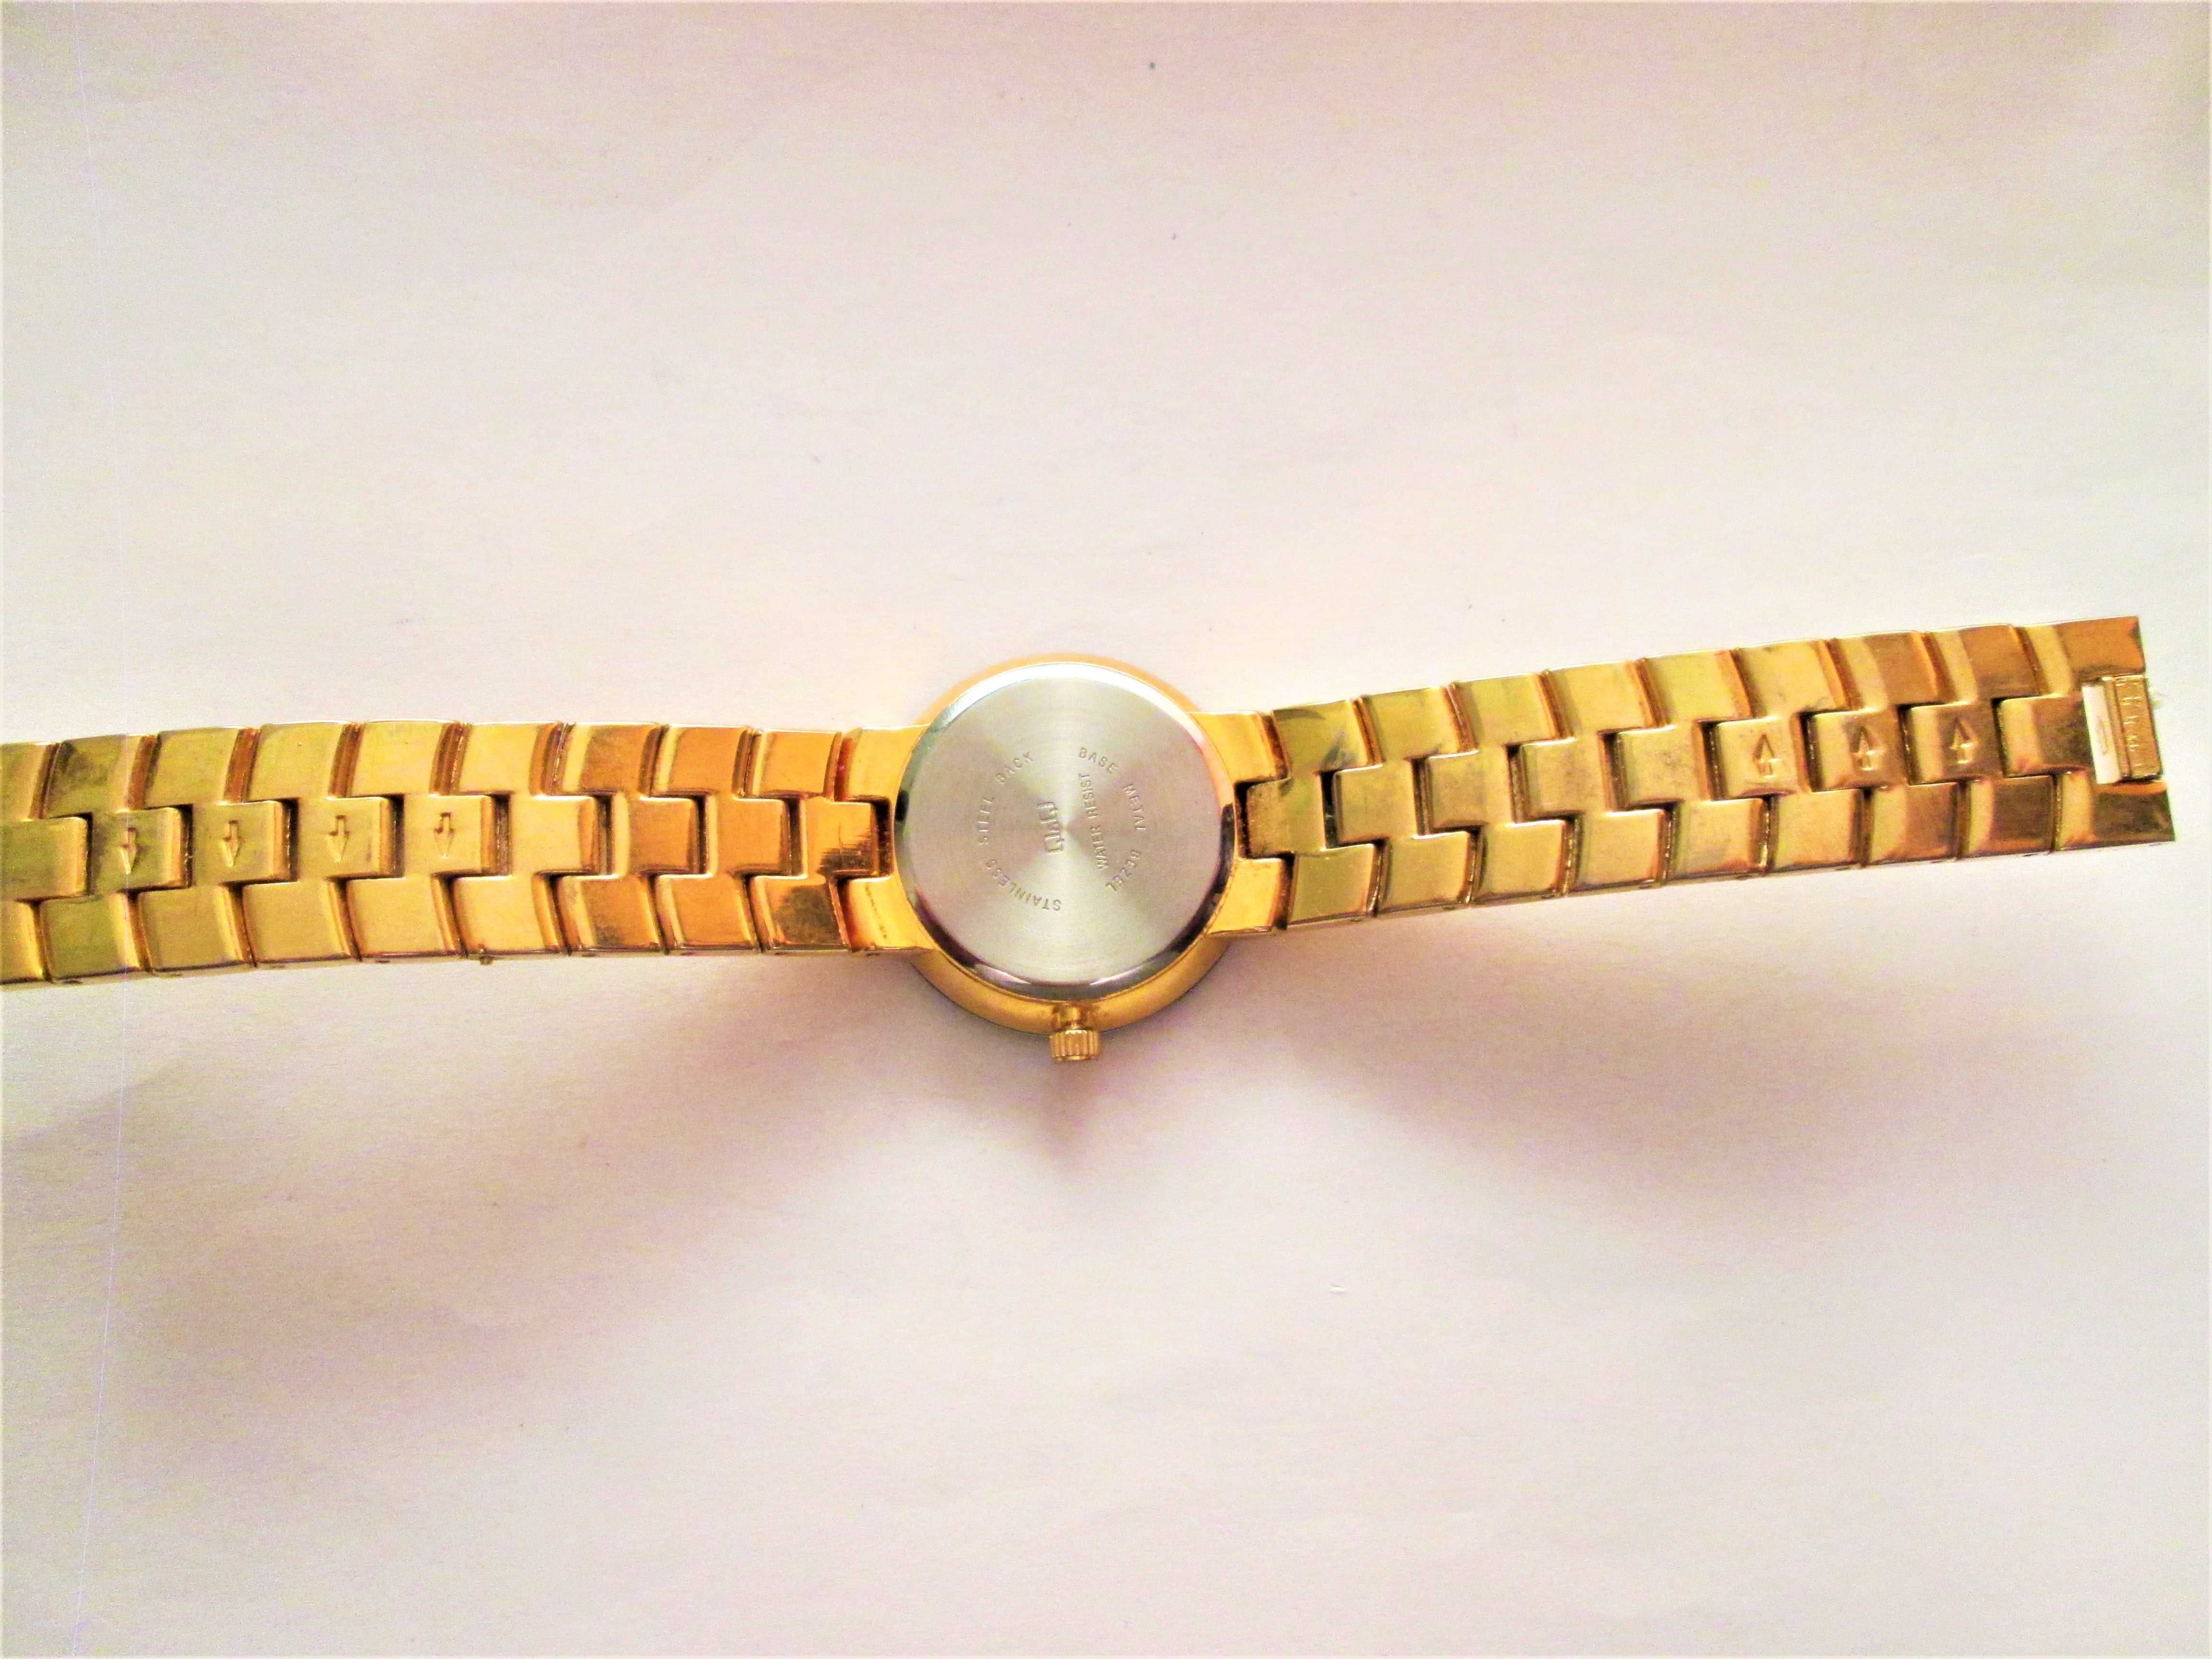 ceas Q&Q de dama placat cu aur , diametrul 32 mm